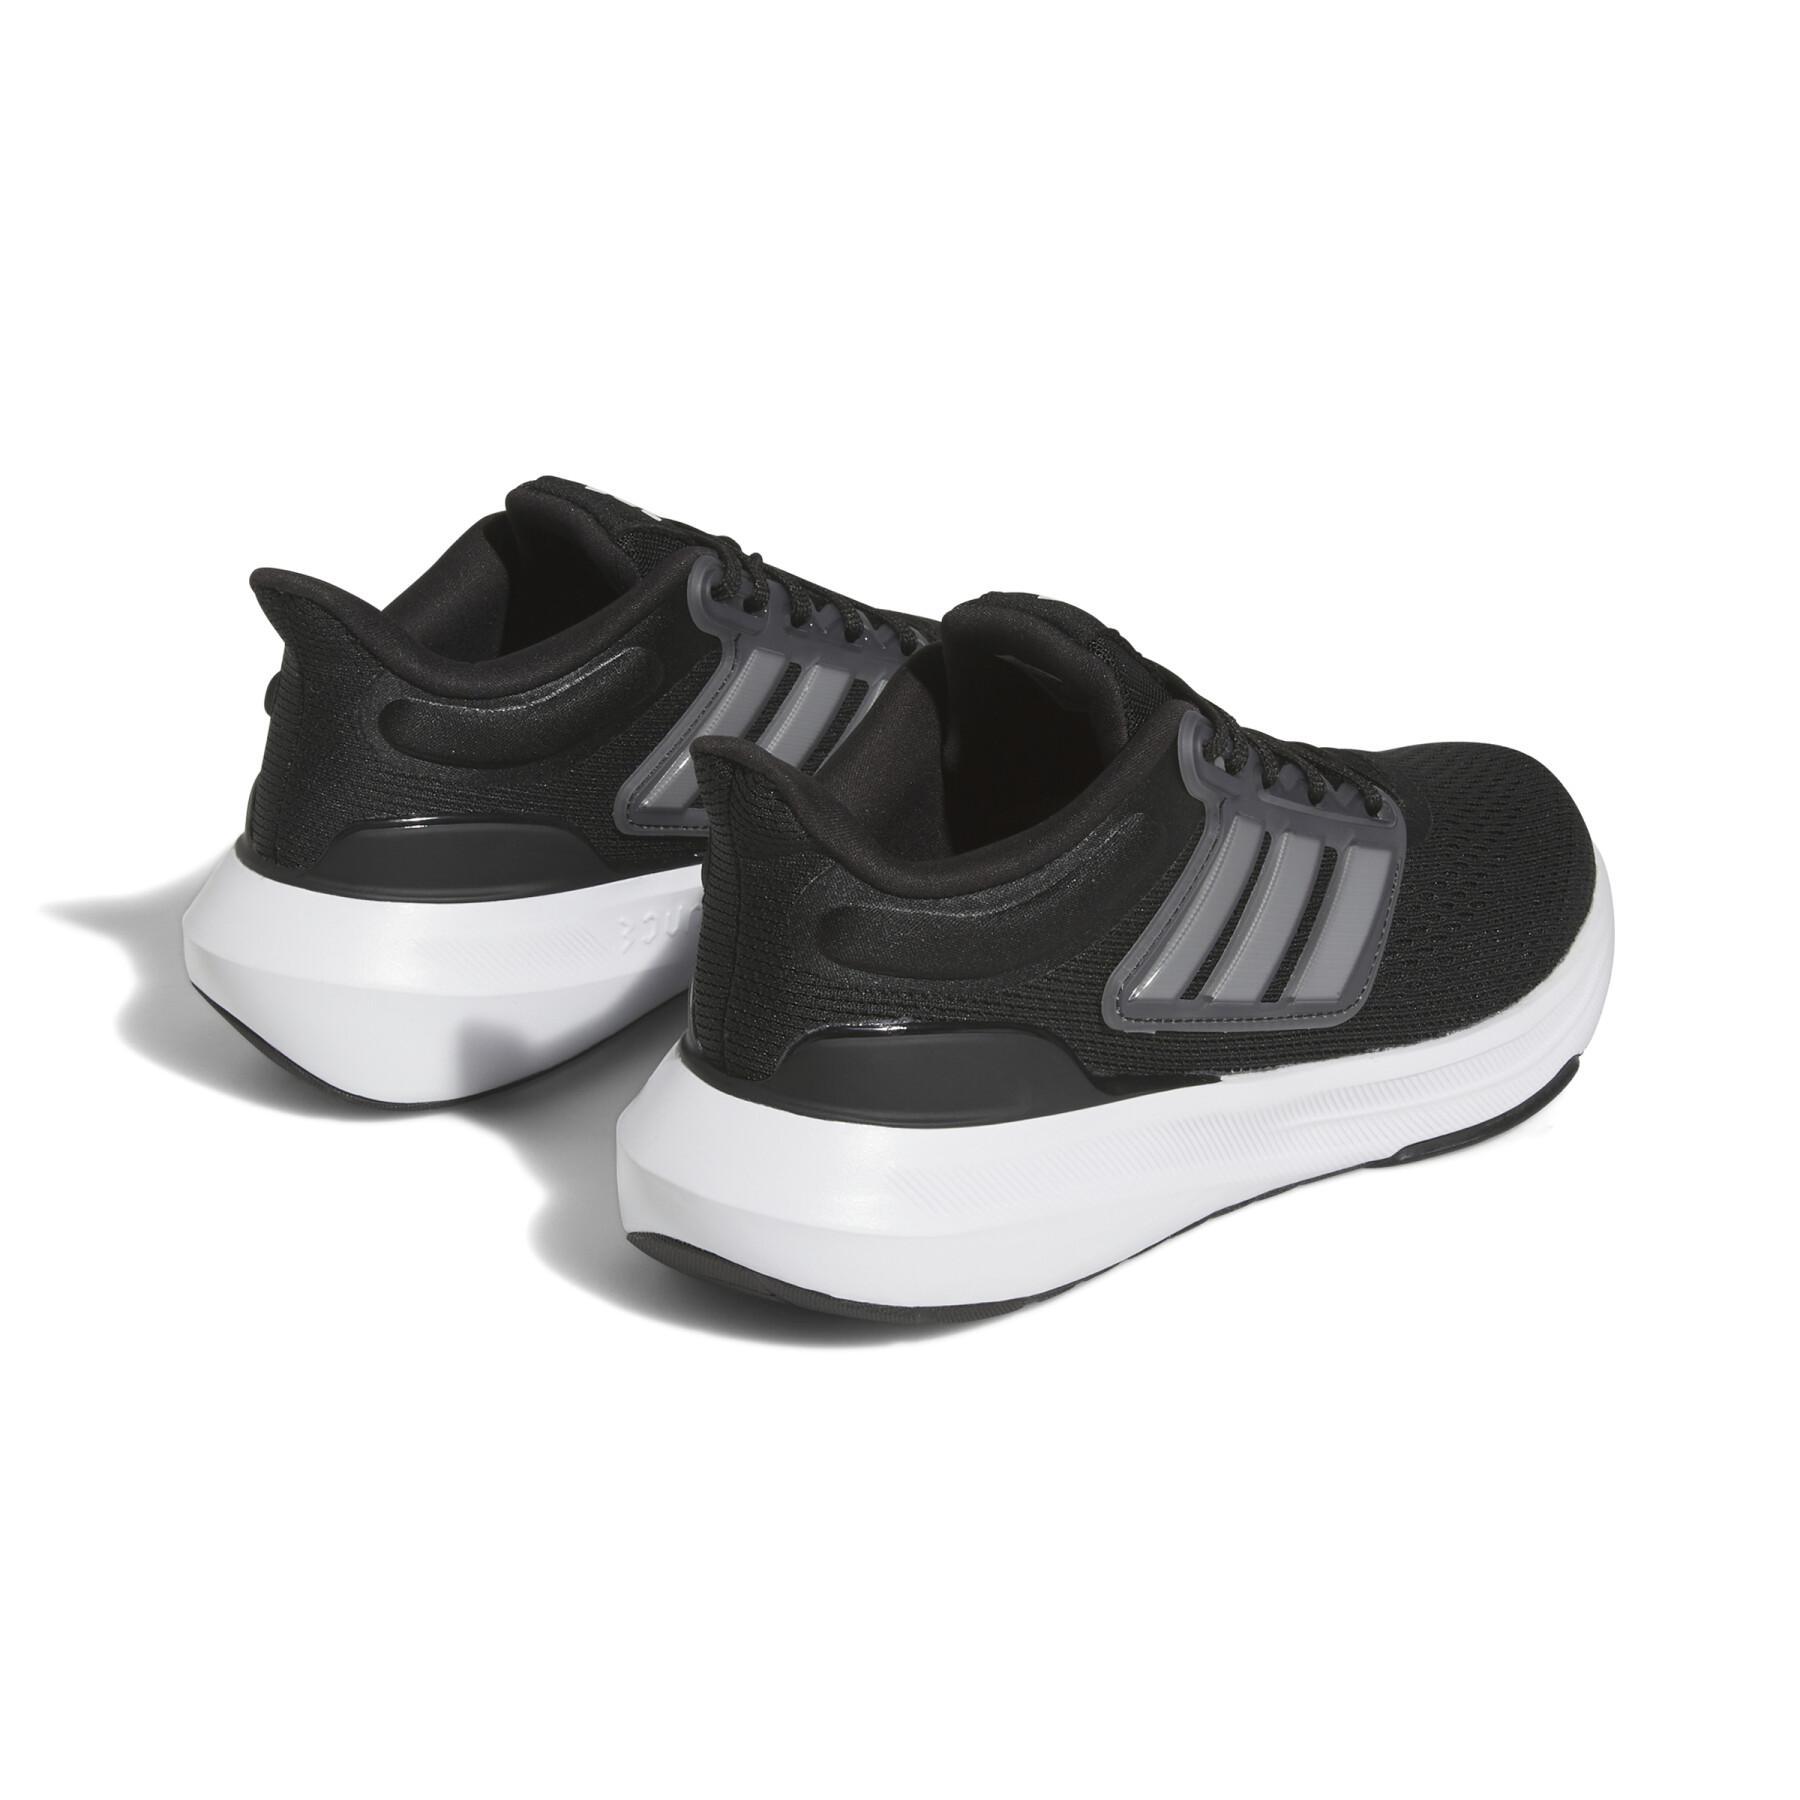 Kinder-Laufschuhe adidas Ultrabounce Sport